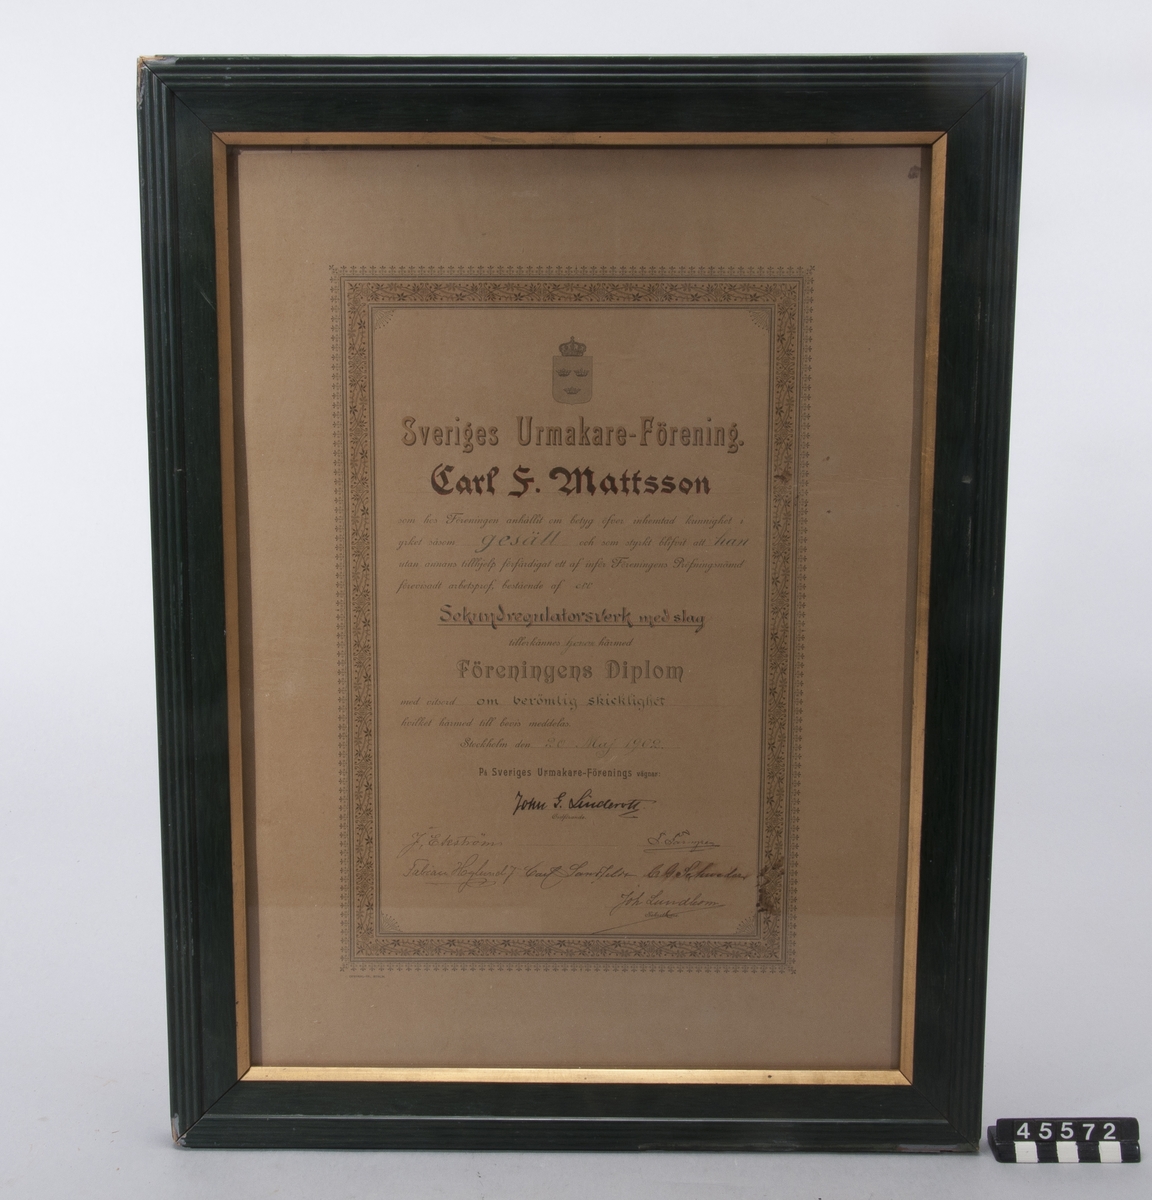 Gesällbrev med betyg/diplom för "Sekundregulatorsverk med slag": utställt av Sveriges Urmakare-Förening till Carl F. Mattsson den 26 maj 1902.